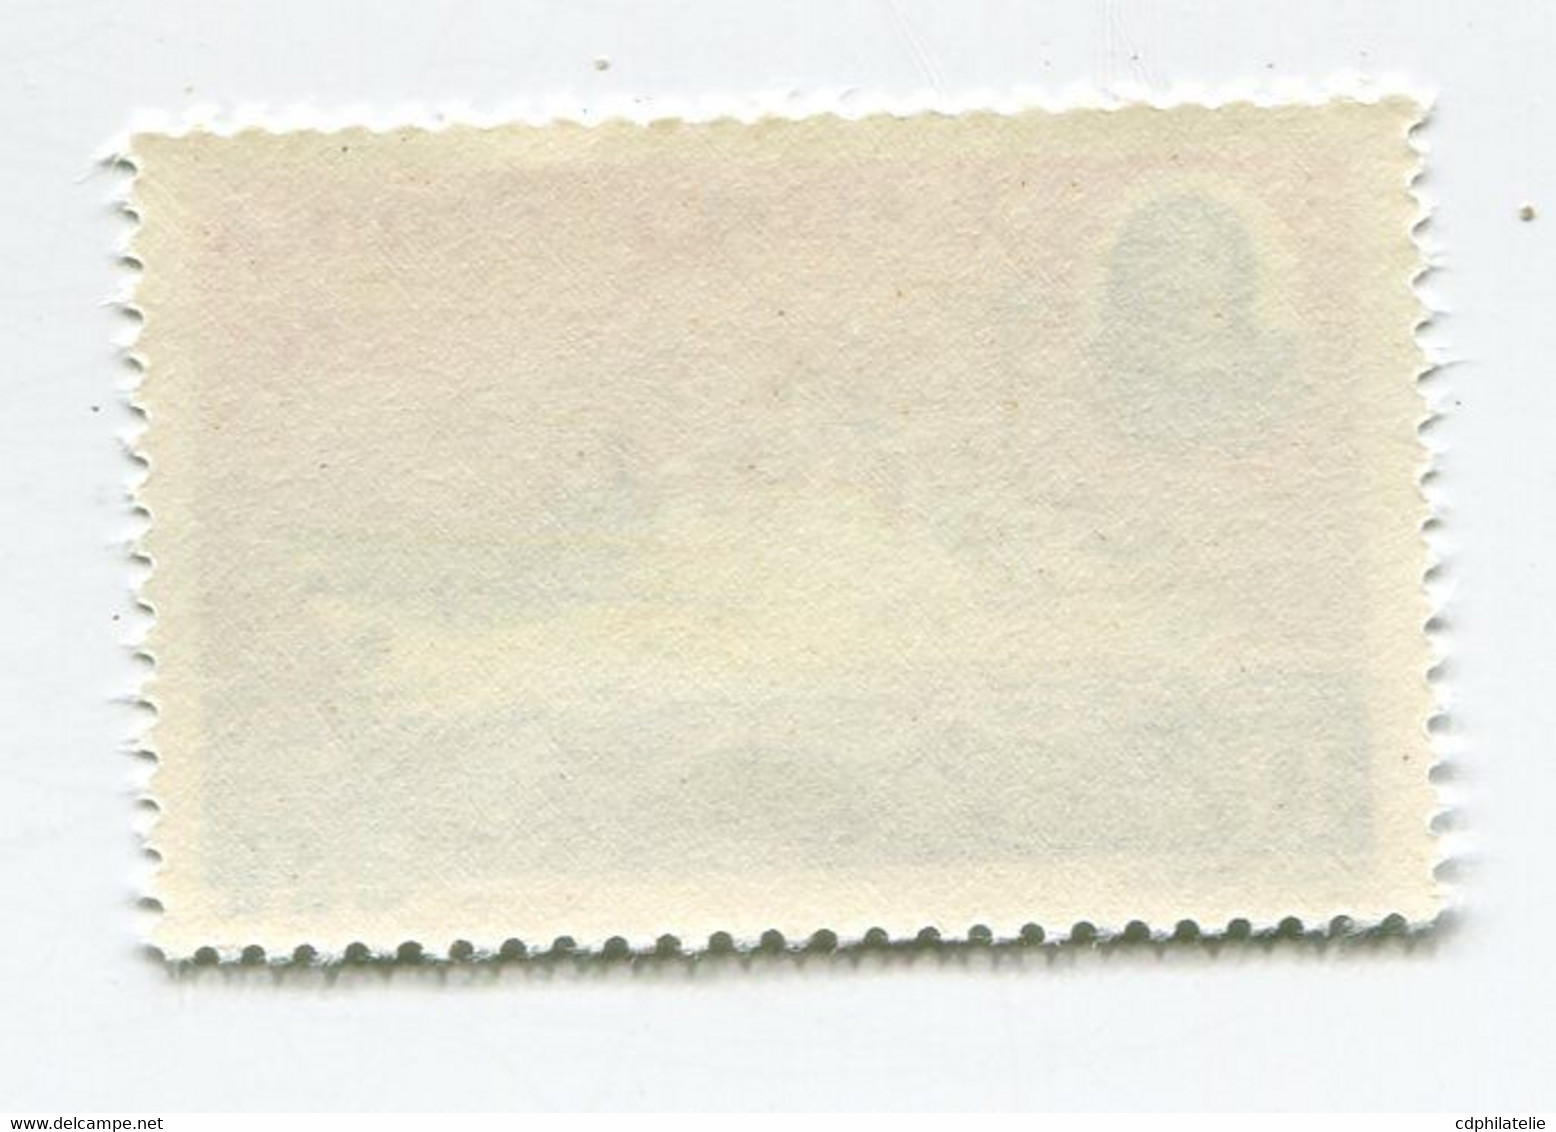 WALLIS-ET-FUTUNA N°171 ** BATEAU " REINE AMELIA " - Unused Stamps